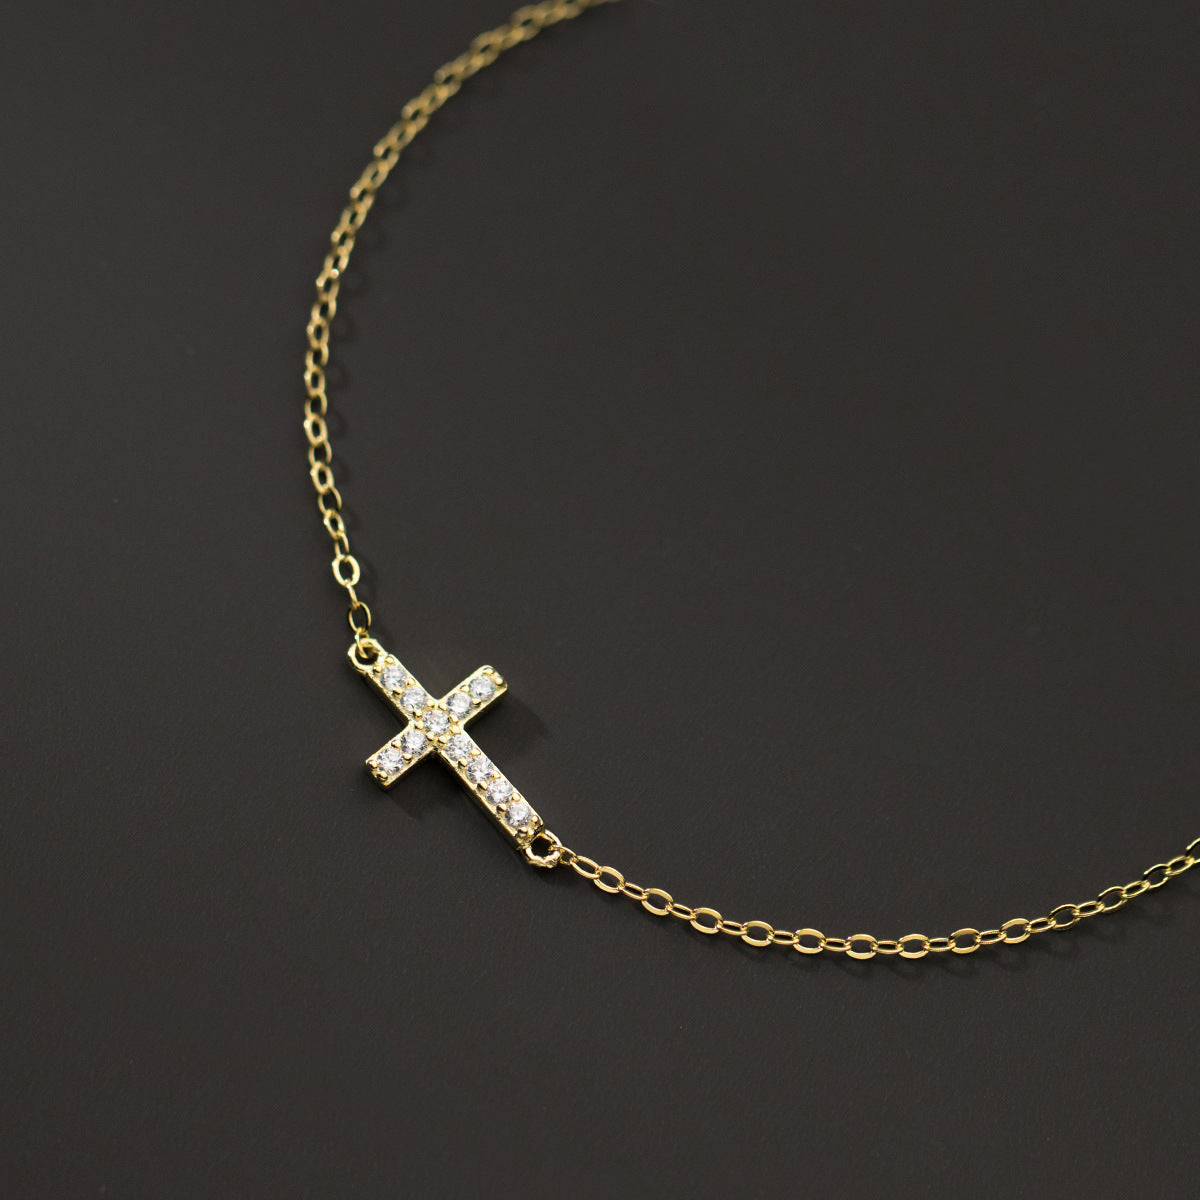 Cross bracelet women/men (15+3cm)